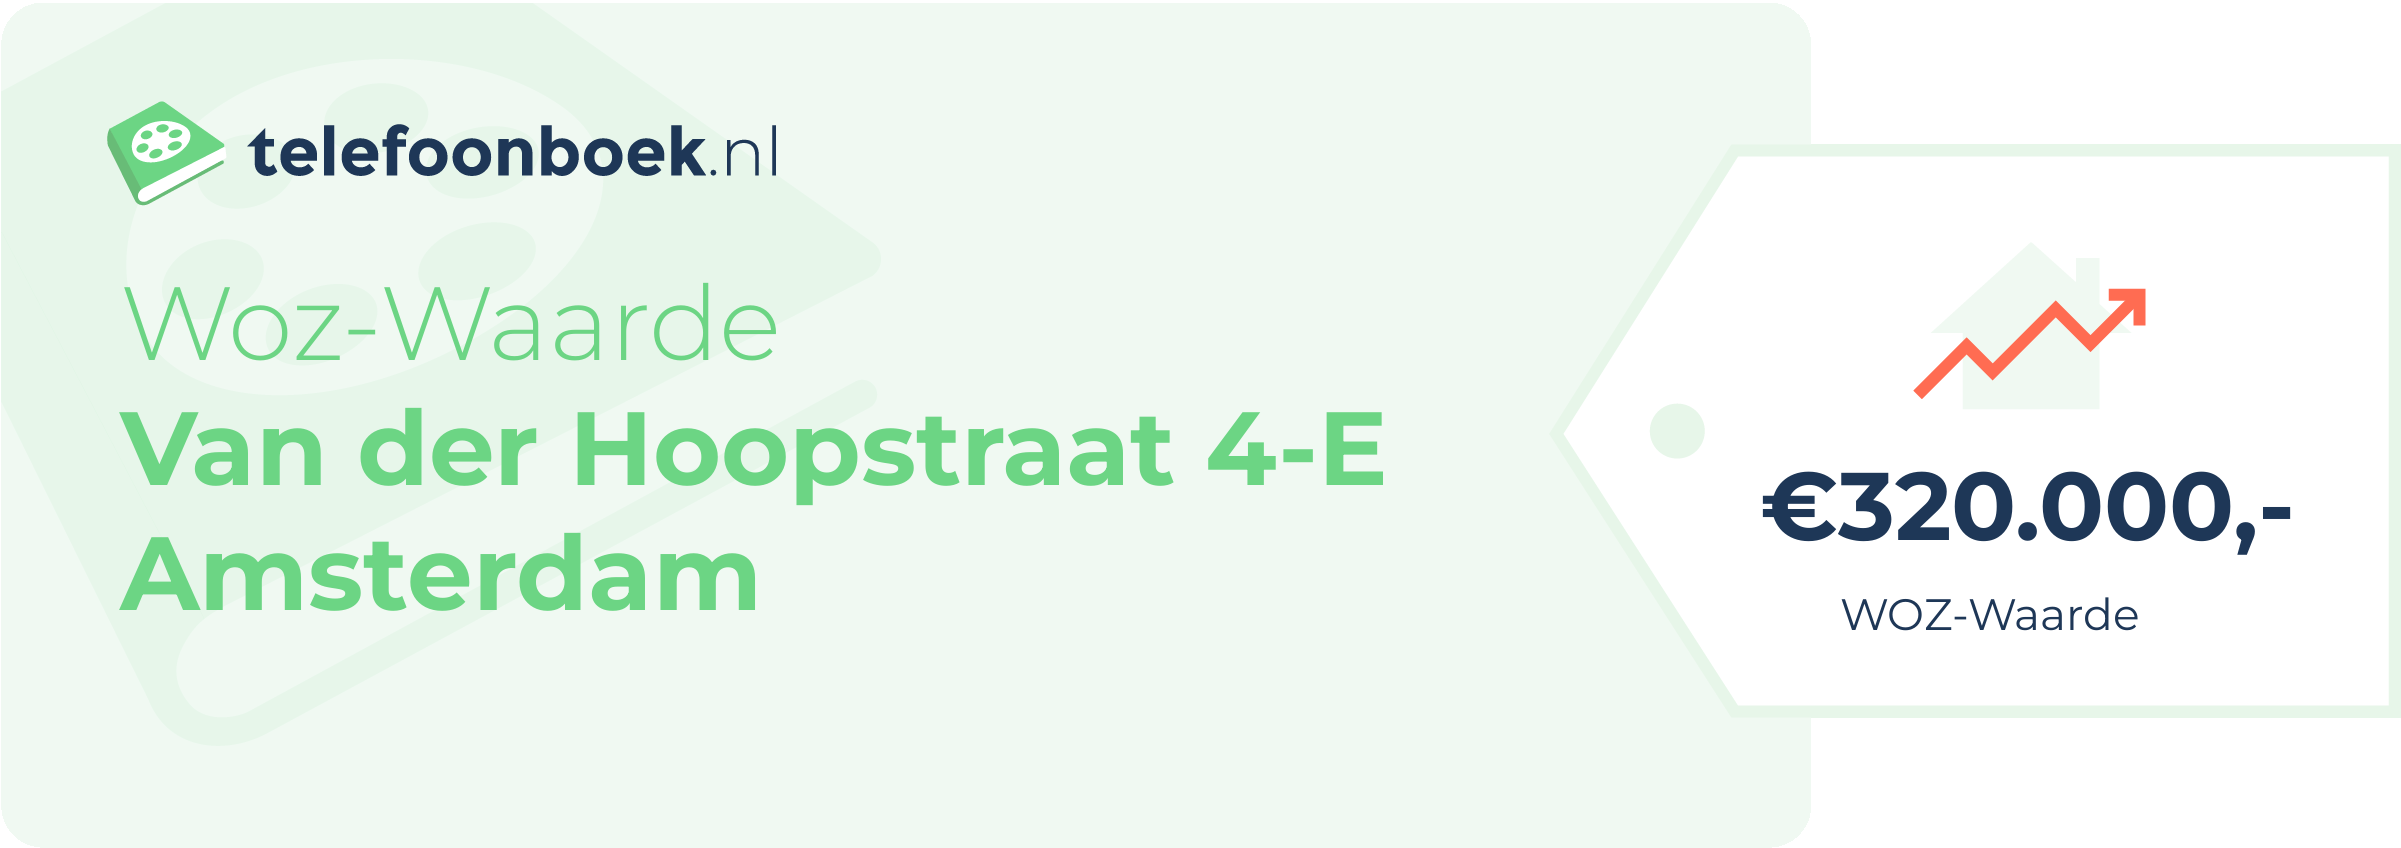 WOZ-waarde Van Der Hoopstraat 4-E Amsterdam